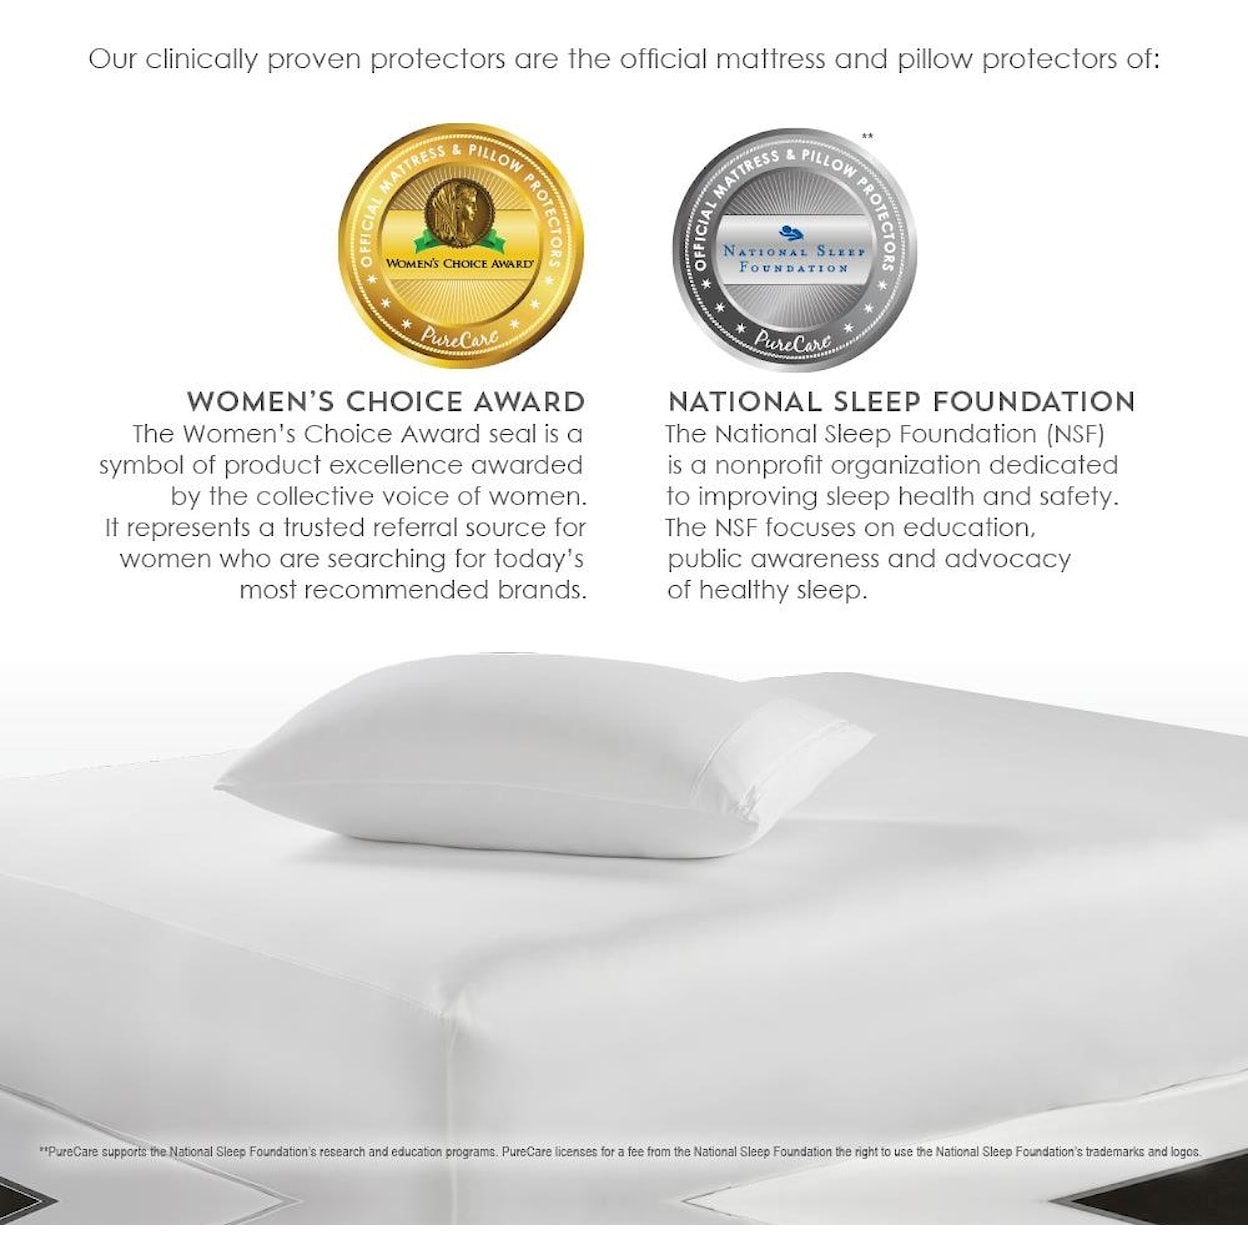 PureCare OmniGuard Air Exchange Queen Pillow Protector